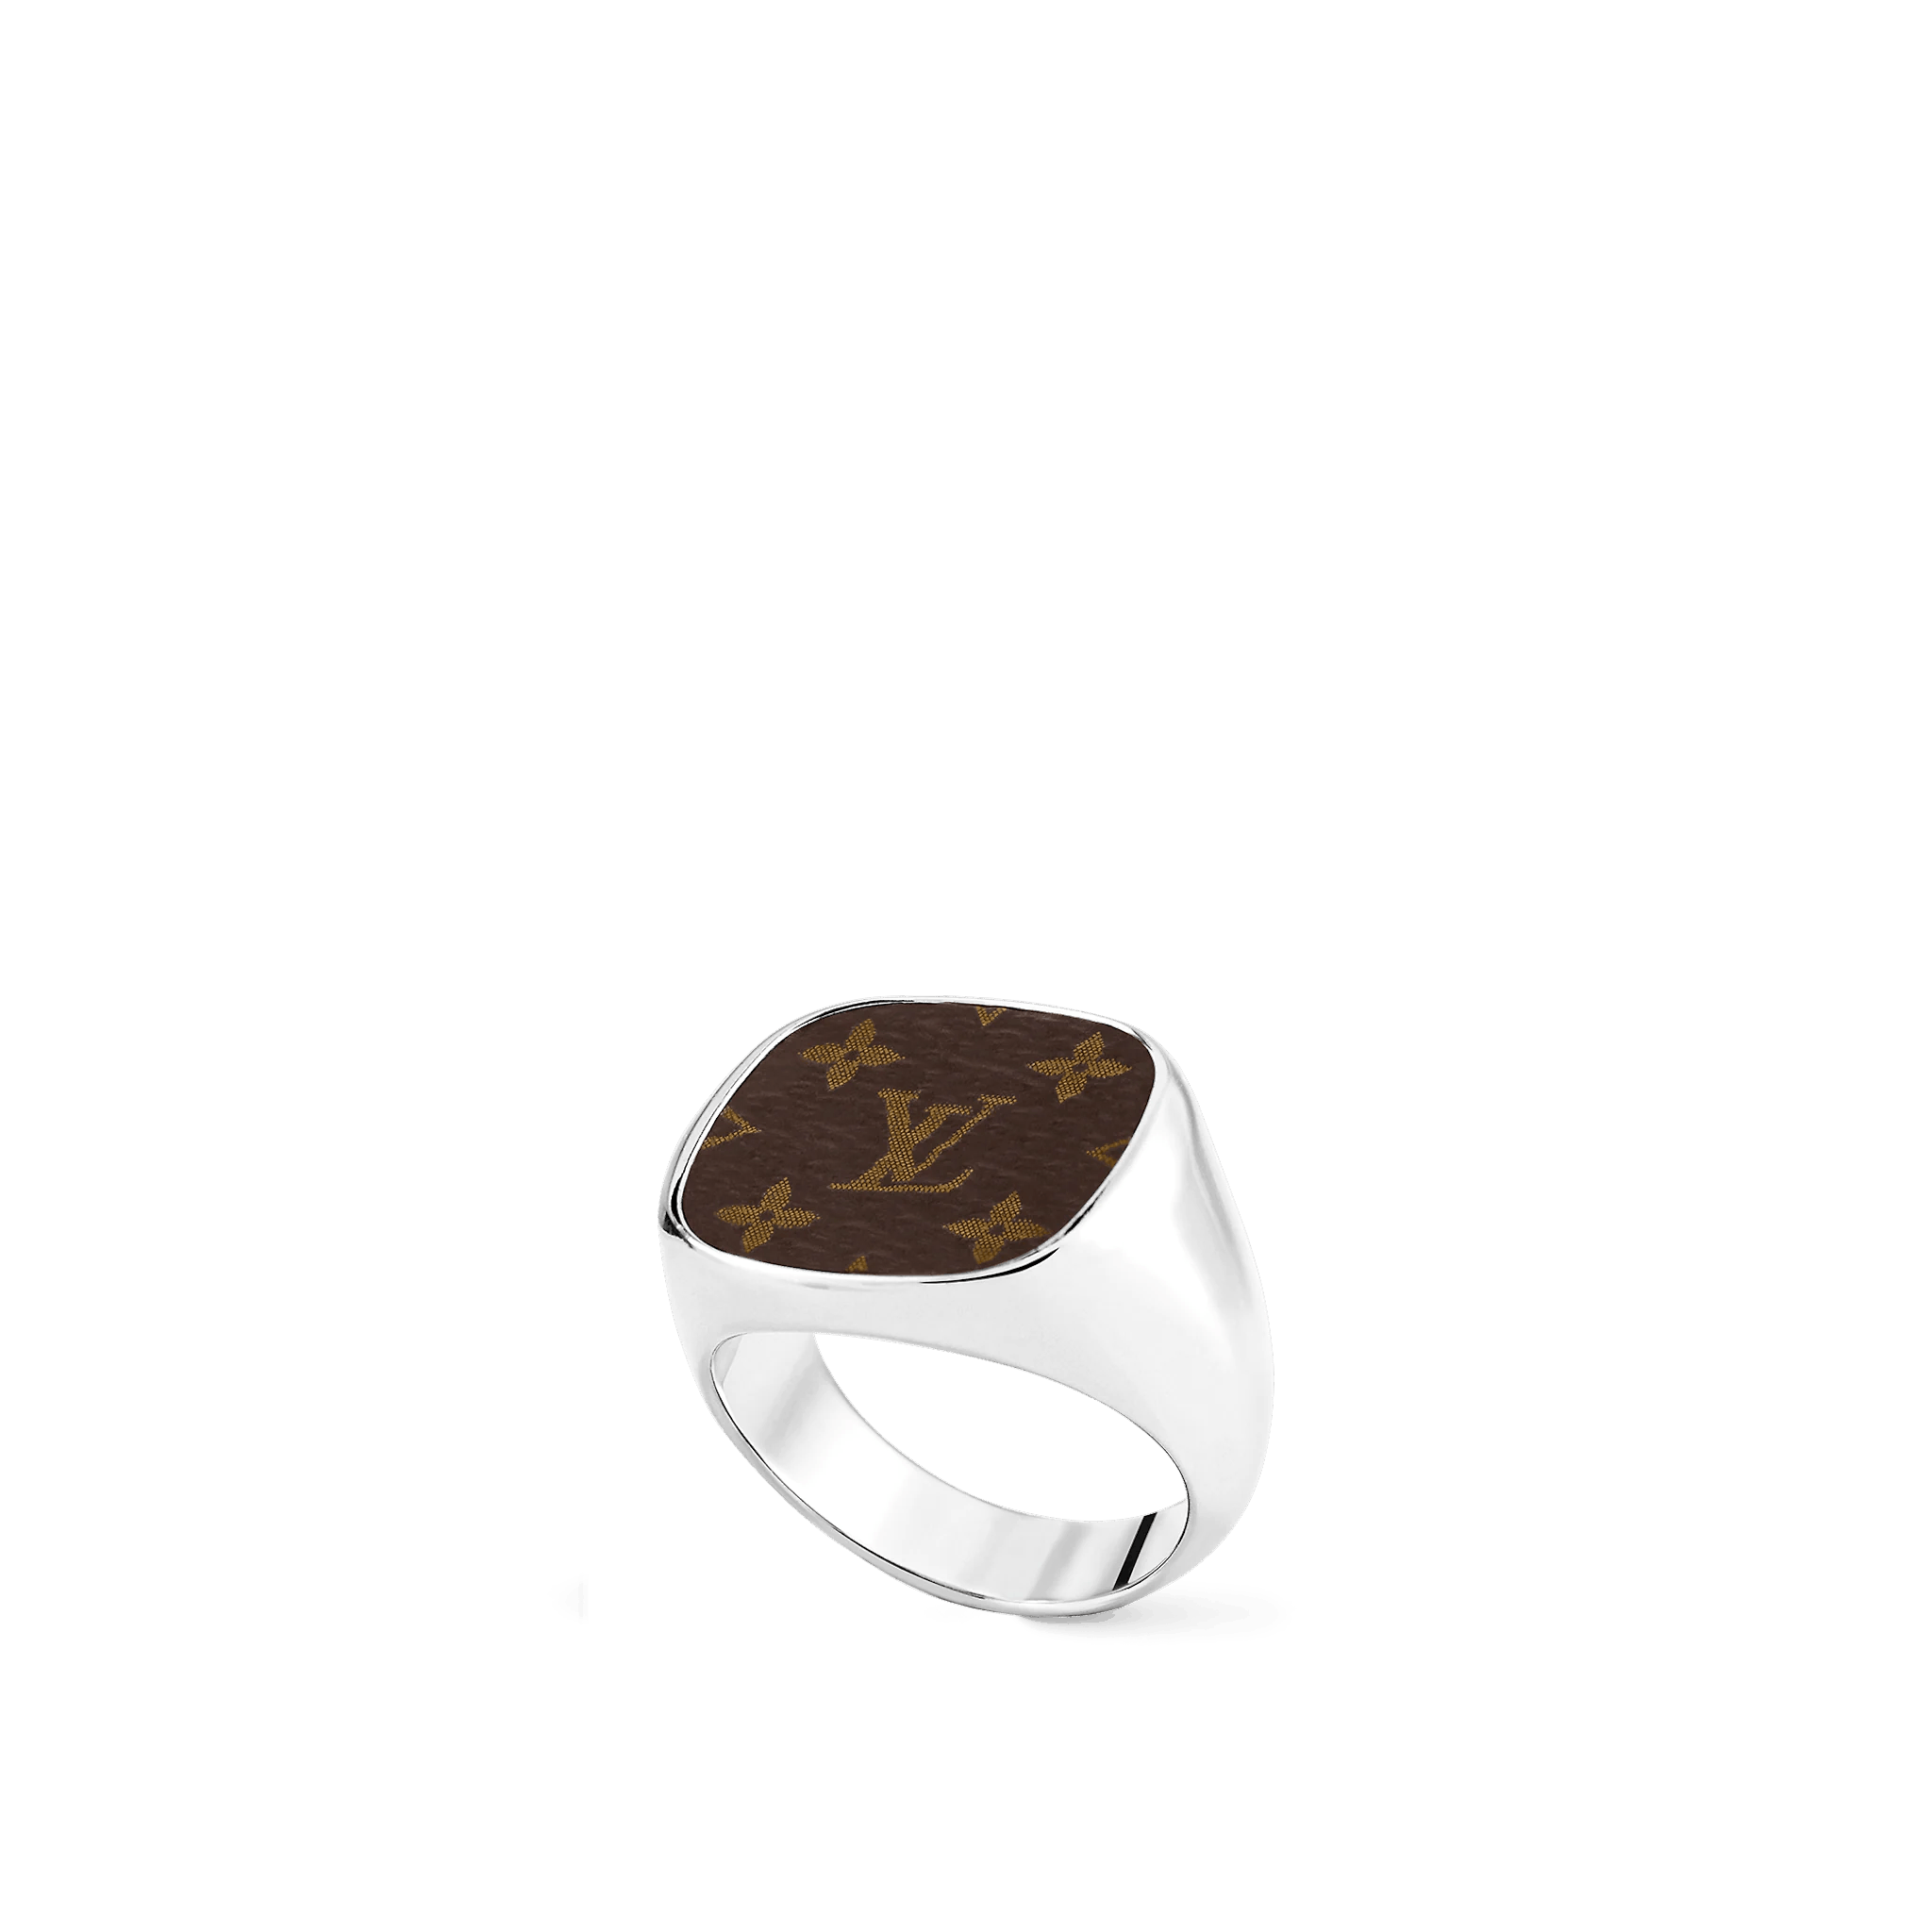 Louis Vuitton Signet Ring Metal Silver 6444352